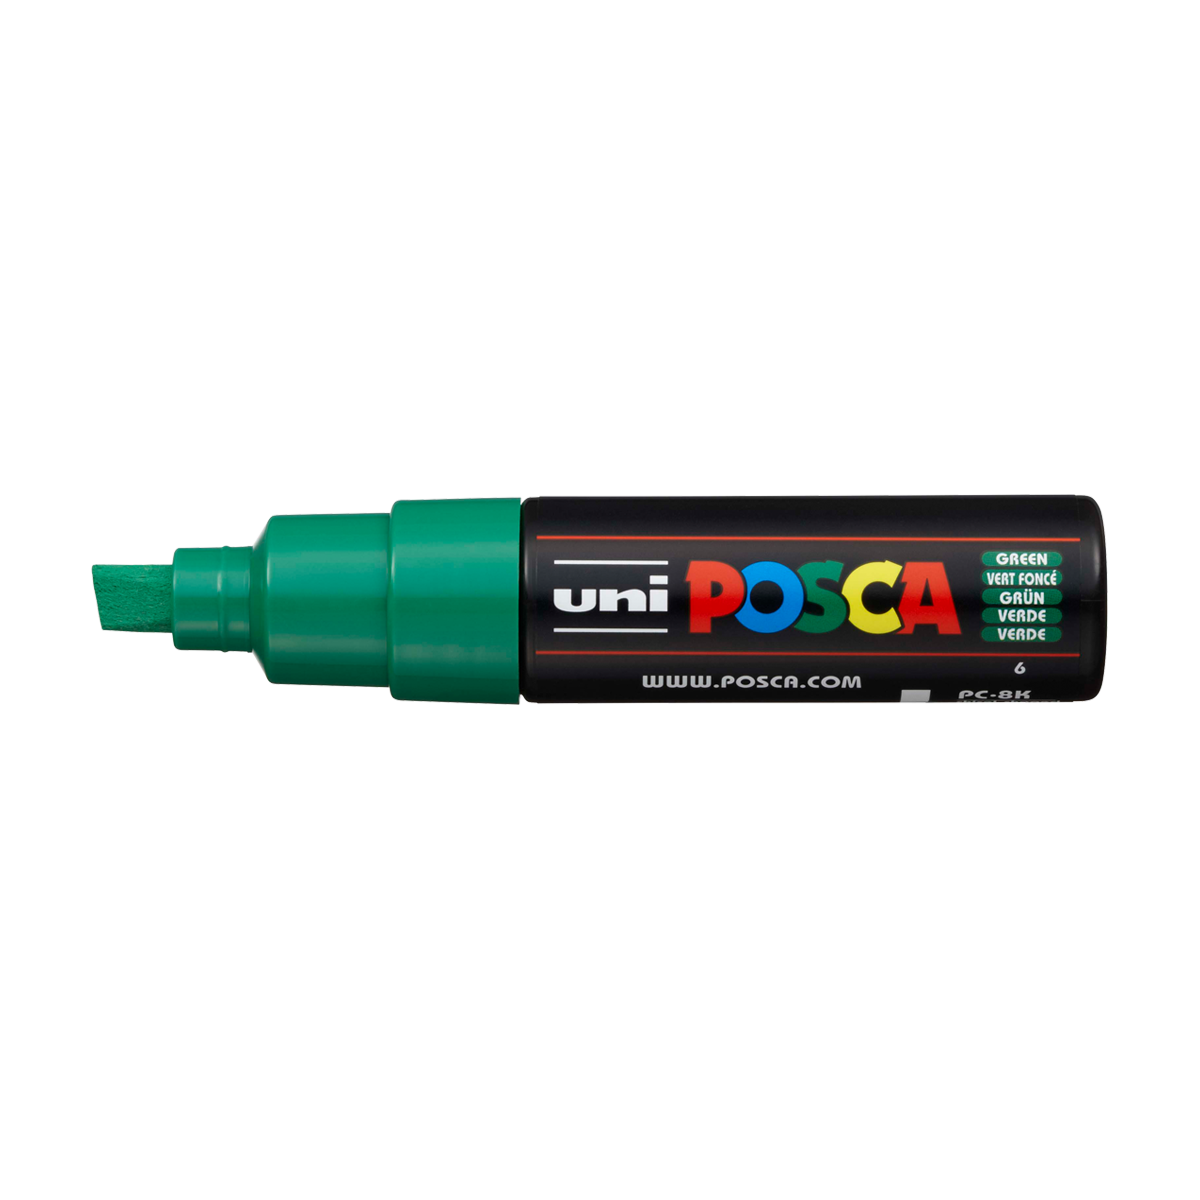 Akrylový popisovač Uni Posca PC-8K, 8 mm, zelený